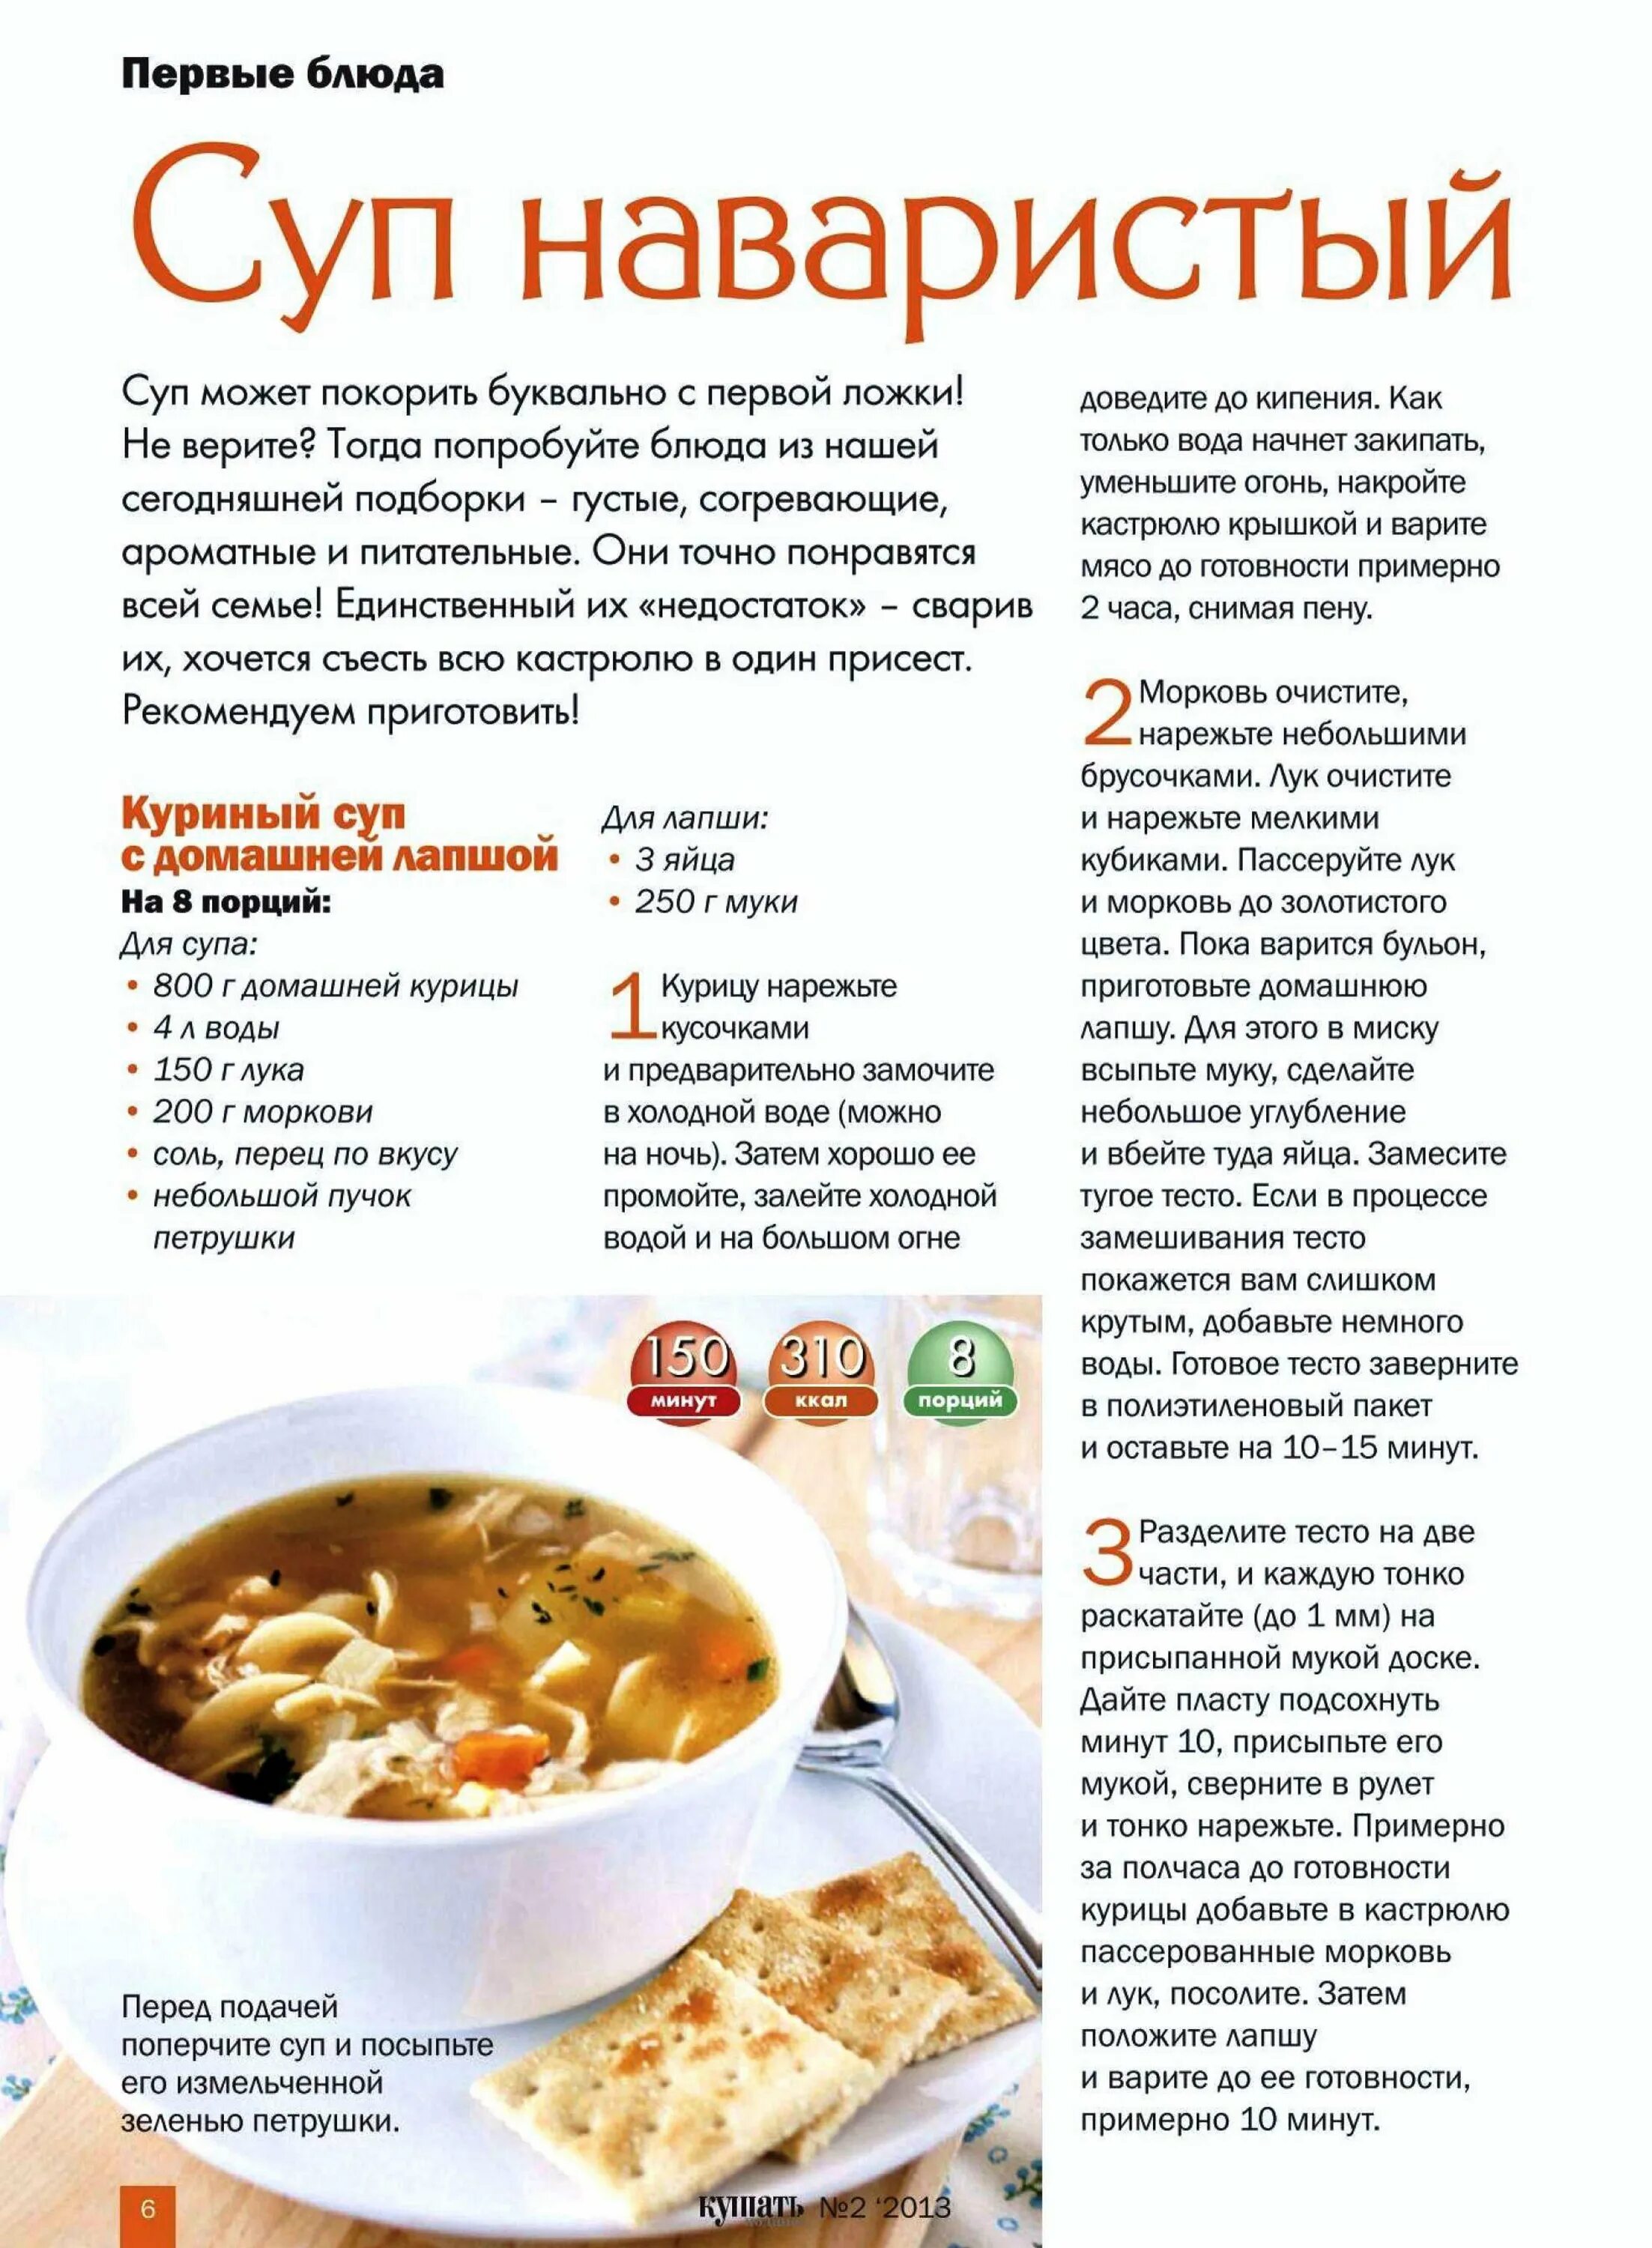 Супы рецепты. Первые блюда рецепты. Рецепты супов с описанием. Наваристый куриный суп.